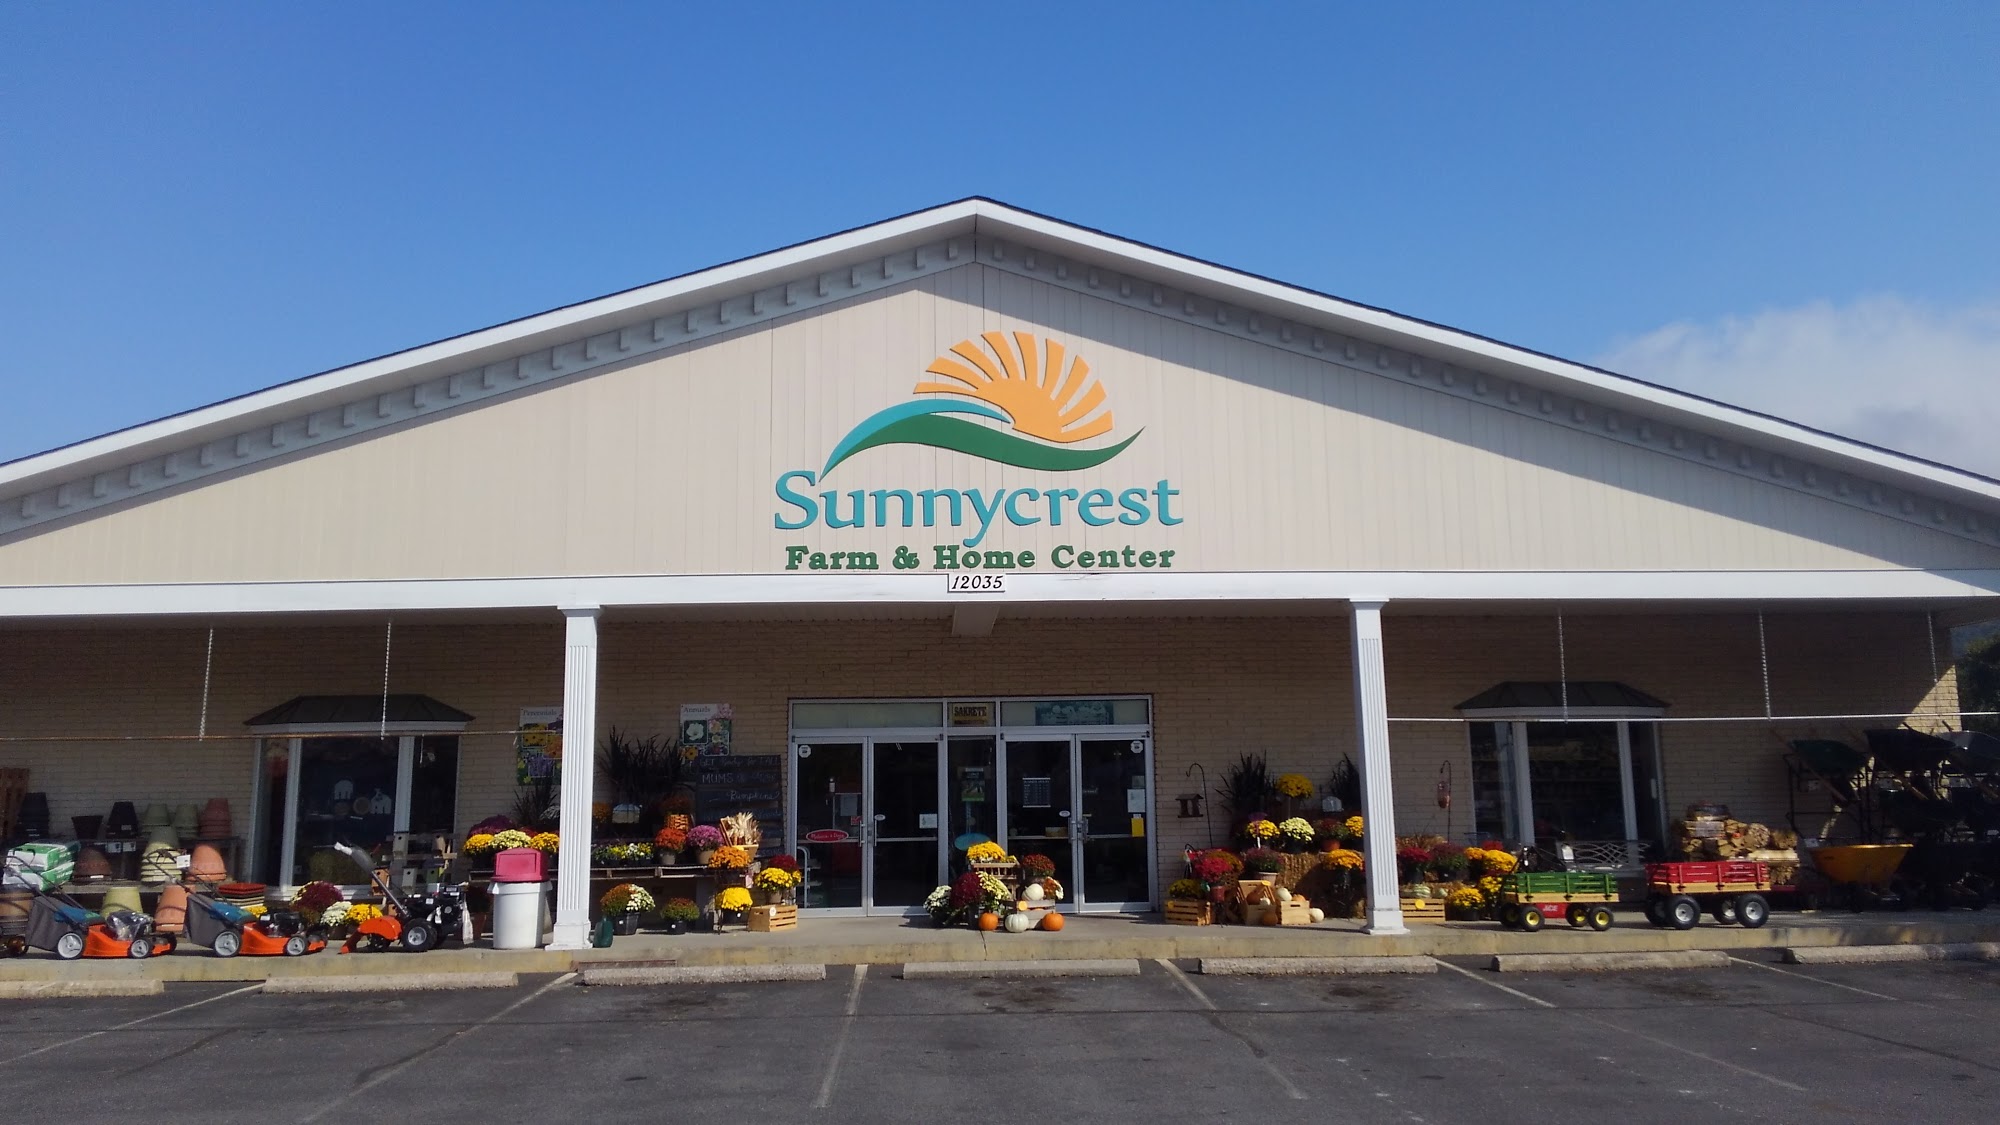 Sunnycrest Farm & Home Center